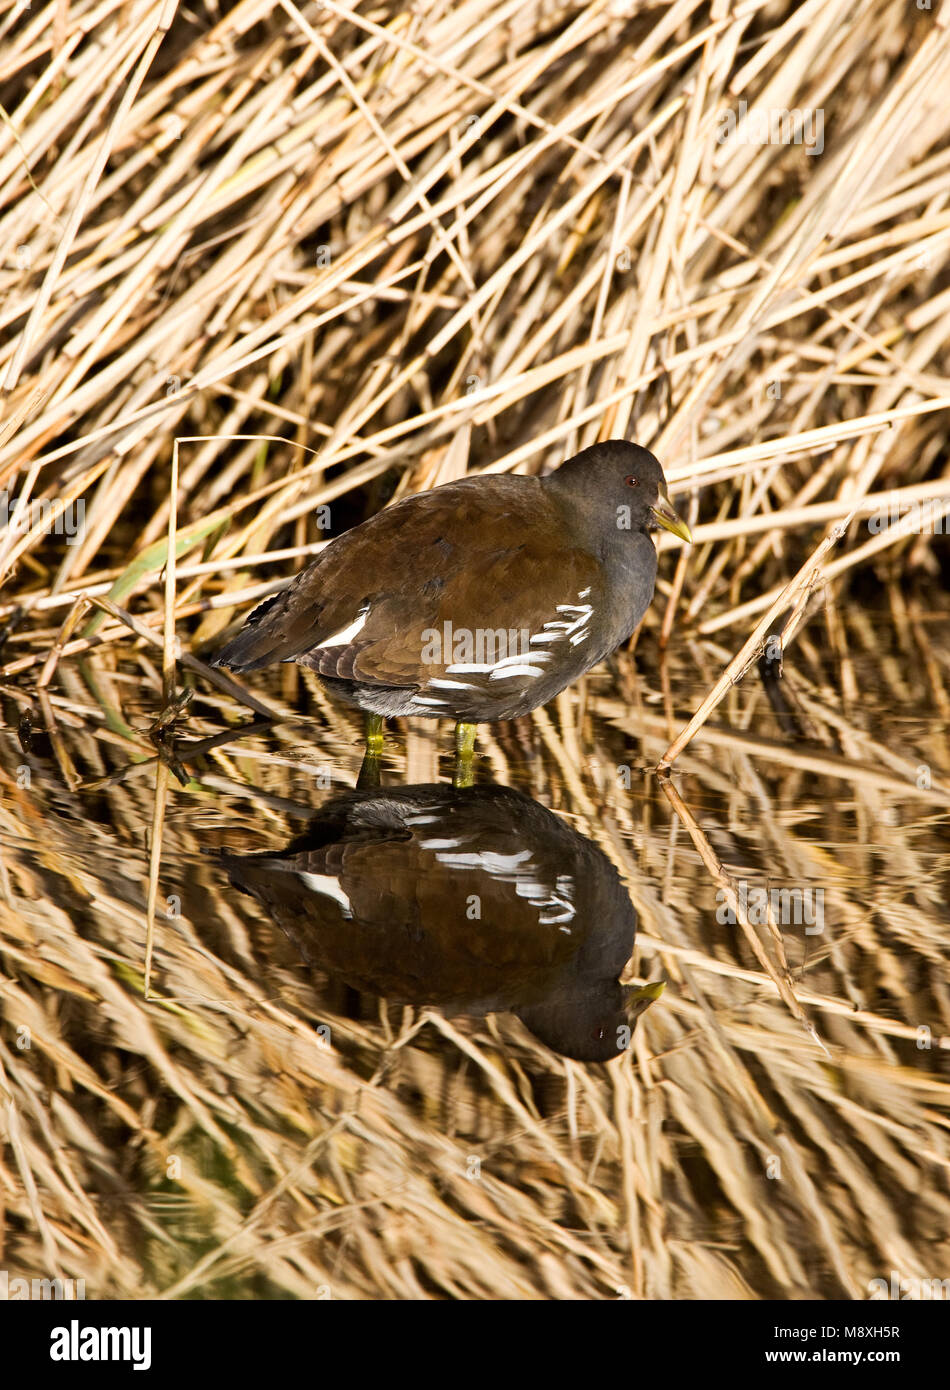 Waterhoen onvolwassen met spiegelbeeld in water; Common Moorhen juvenile with reflection in water Stock Photo